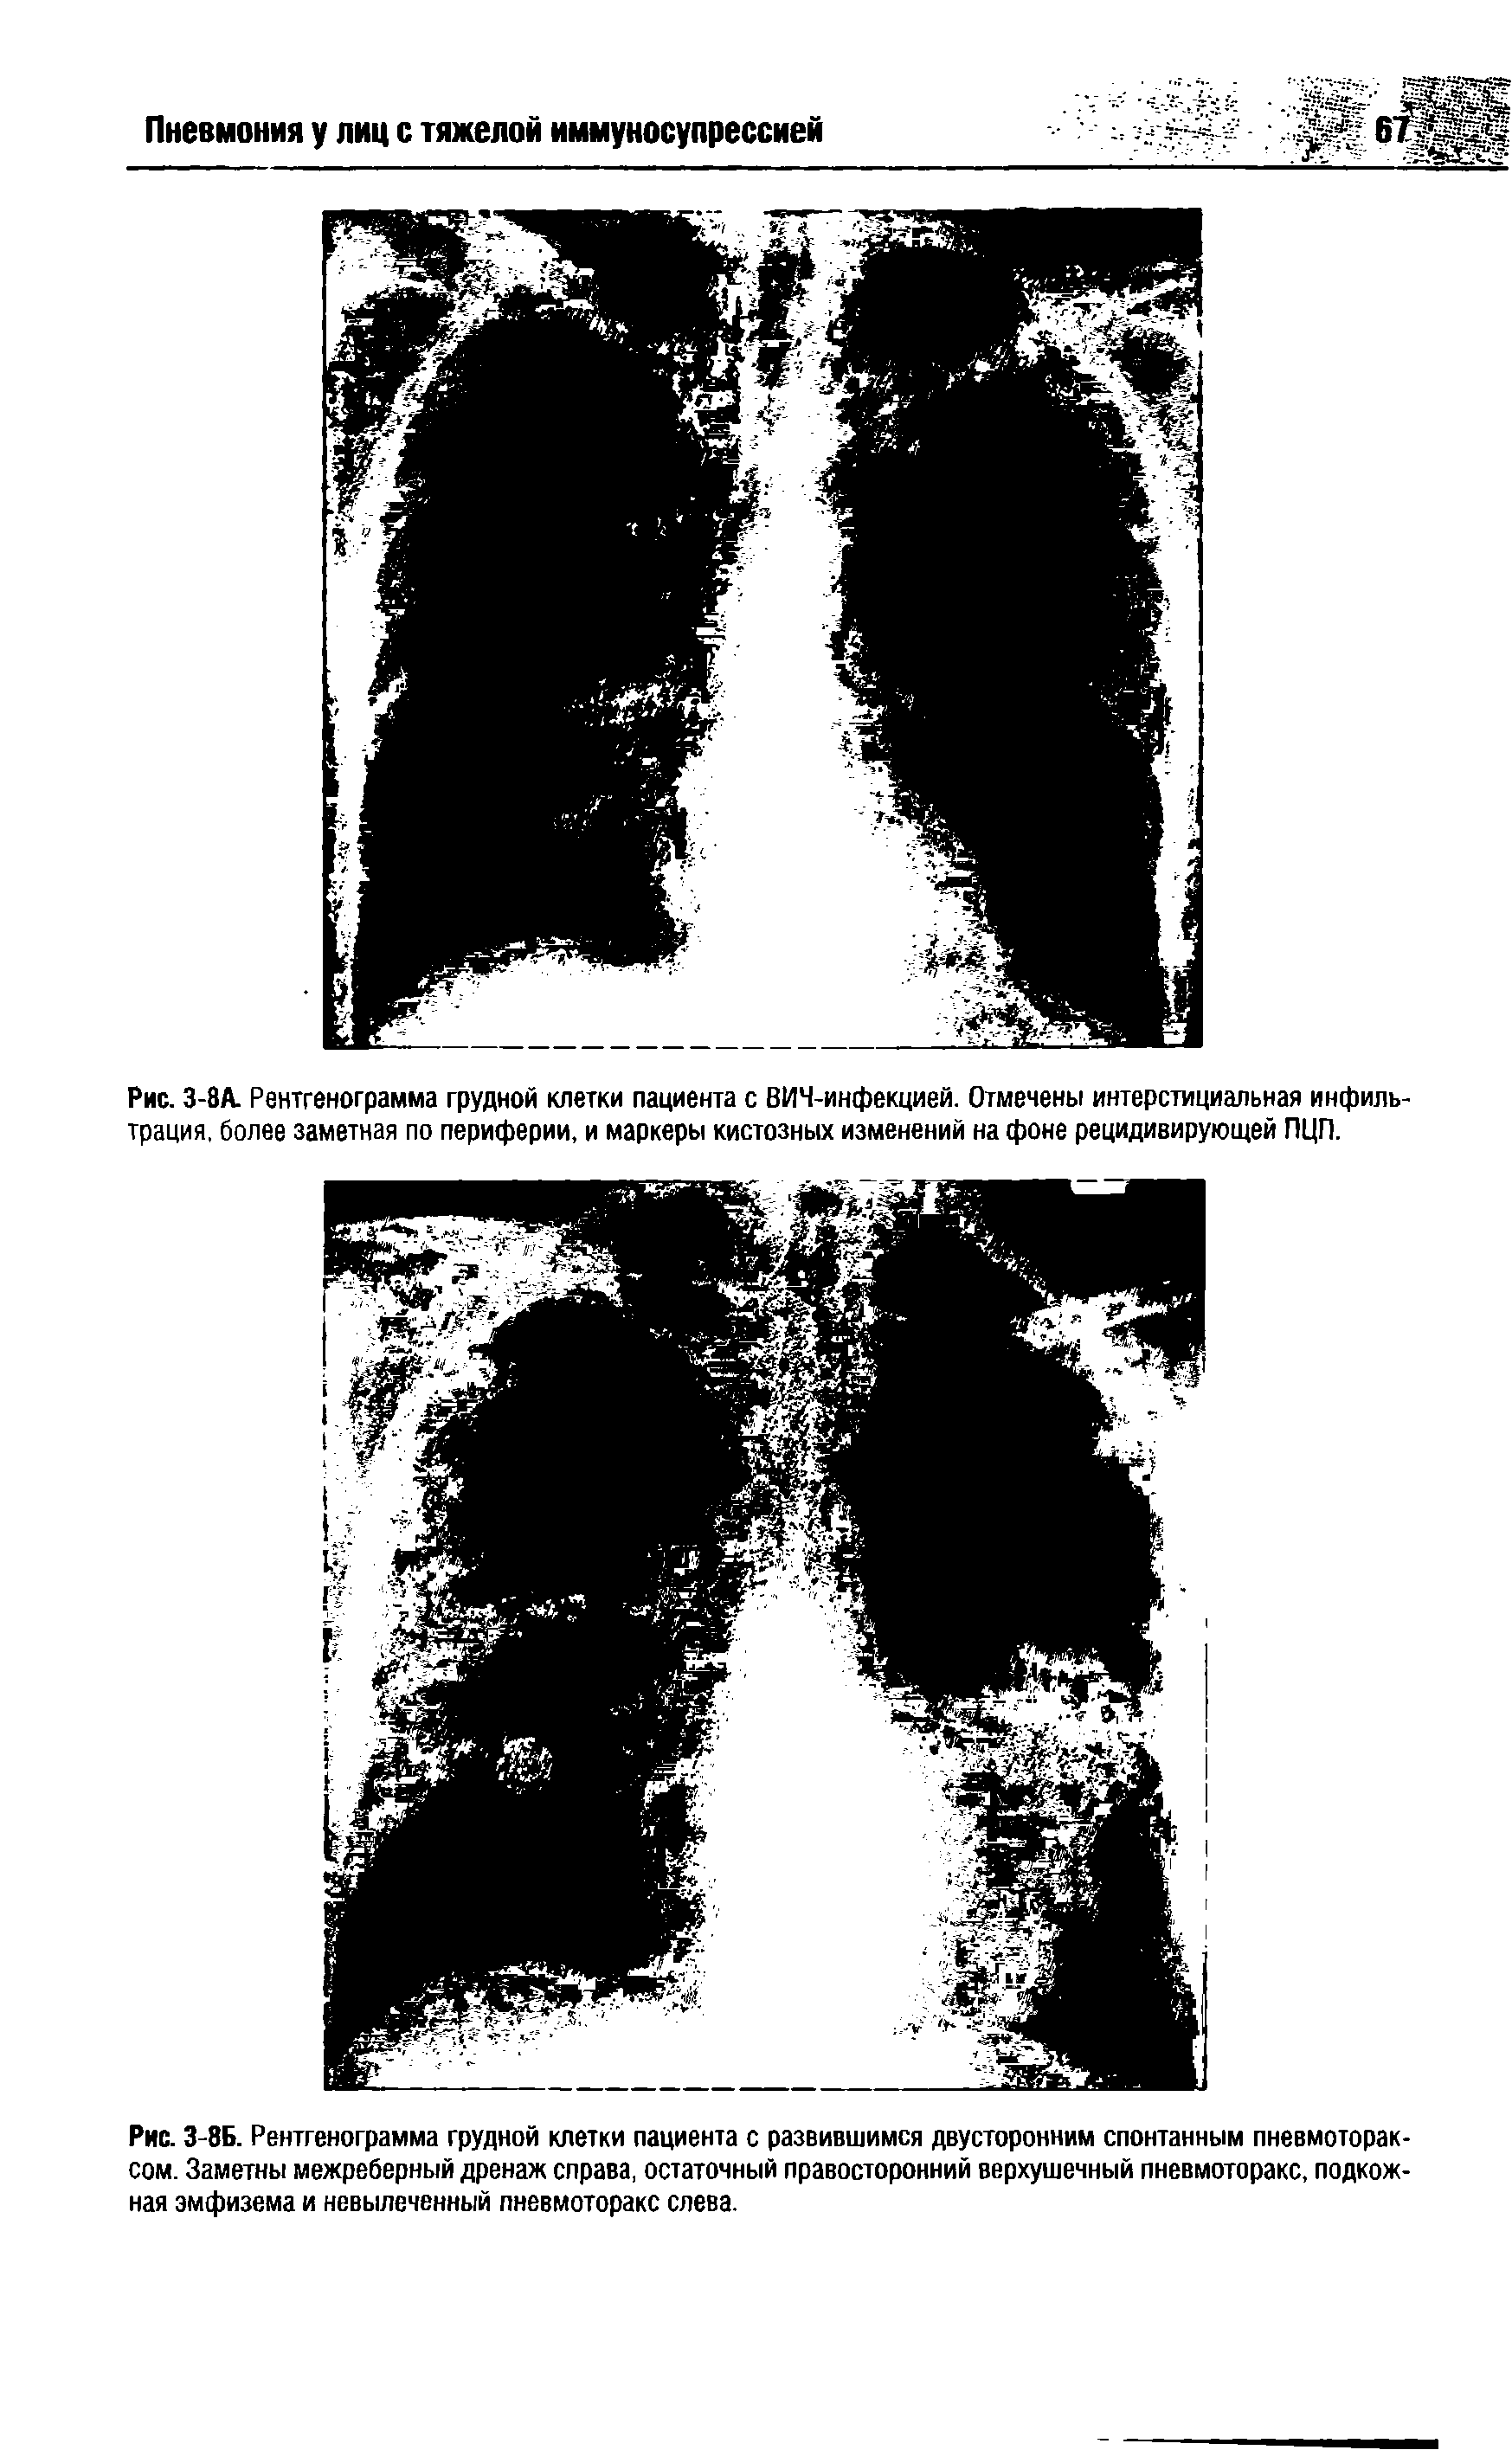 Рис. 3-8Б. Рентгенограмма грудной клетки пациента с развившимся двусторонним спонтанным пневмотораксом. Заметны межреберный дренаж справа, остаточный правосторонний верхушечный пневмоторакс, подкожная эмфизема и невыпеченный пневмоторакс слева.